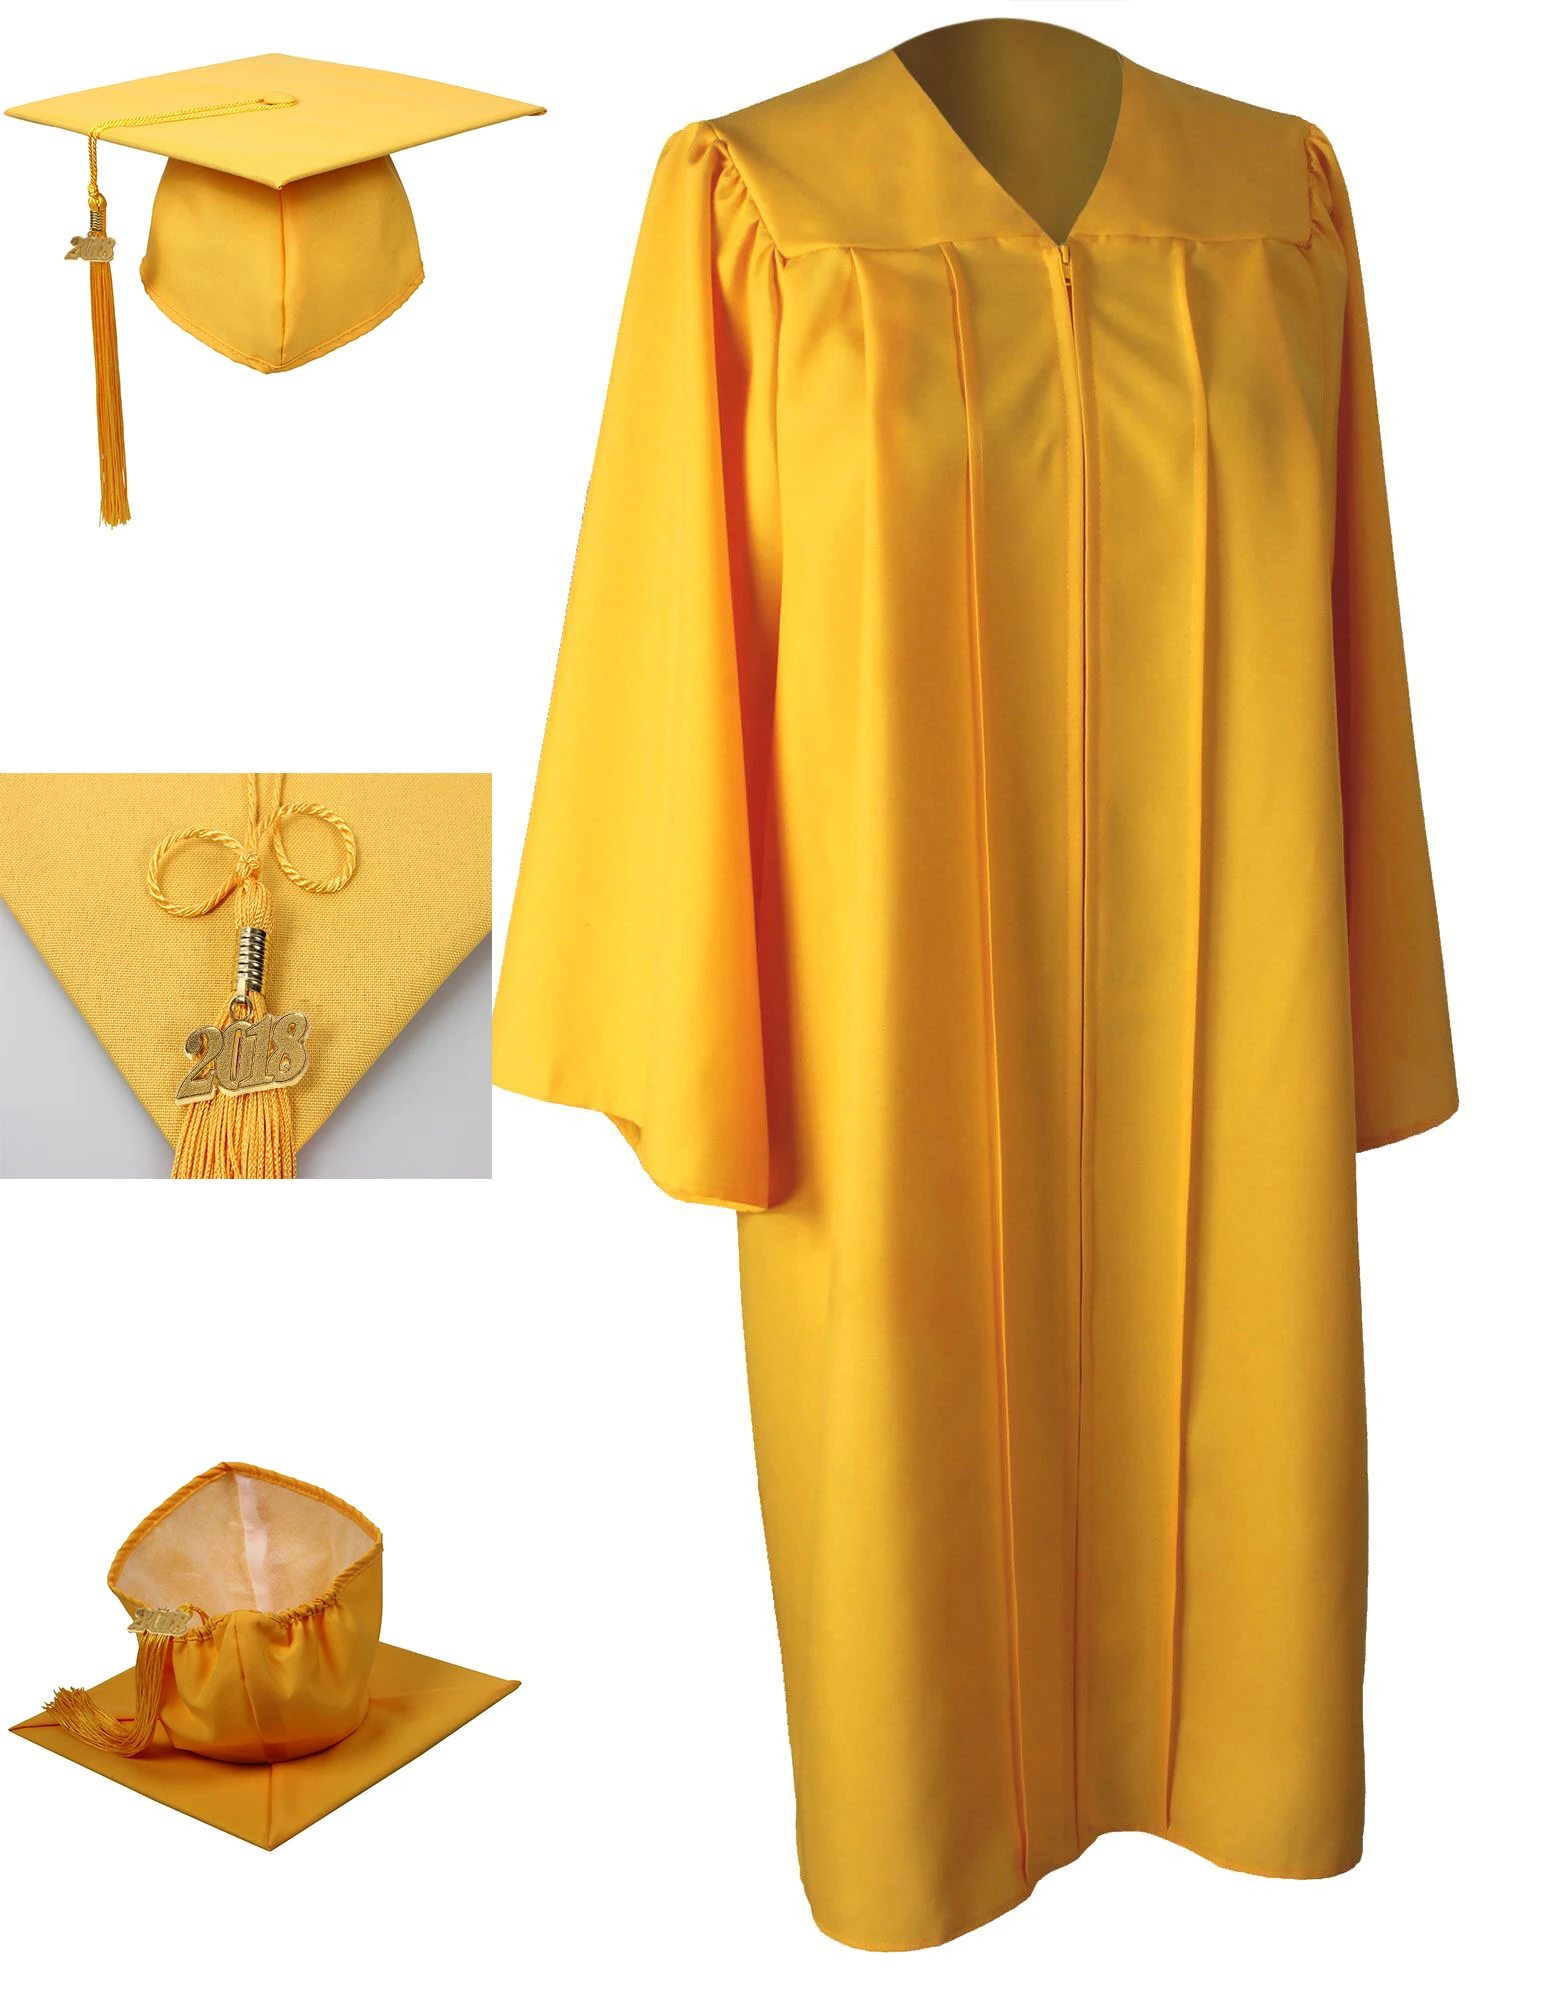 2020 Hot Sale university Graduation Gowns And Caps Suit  Matte Finish/ graduation gown for adult